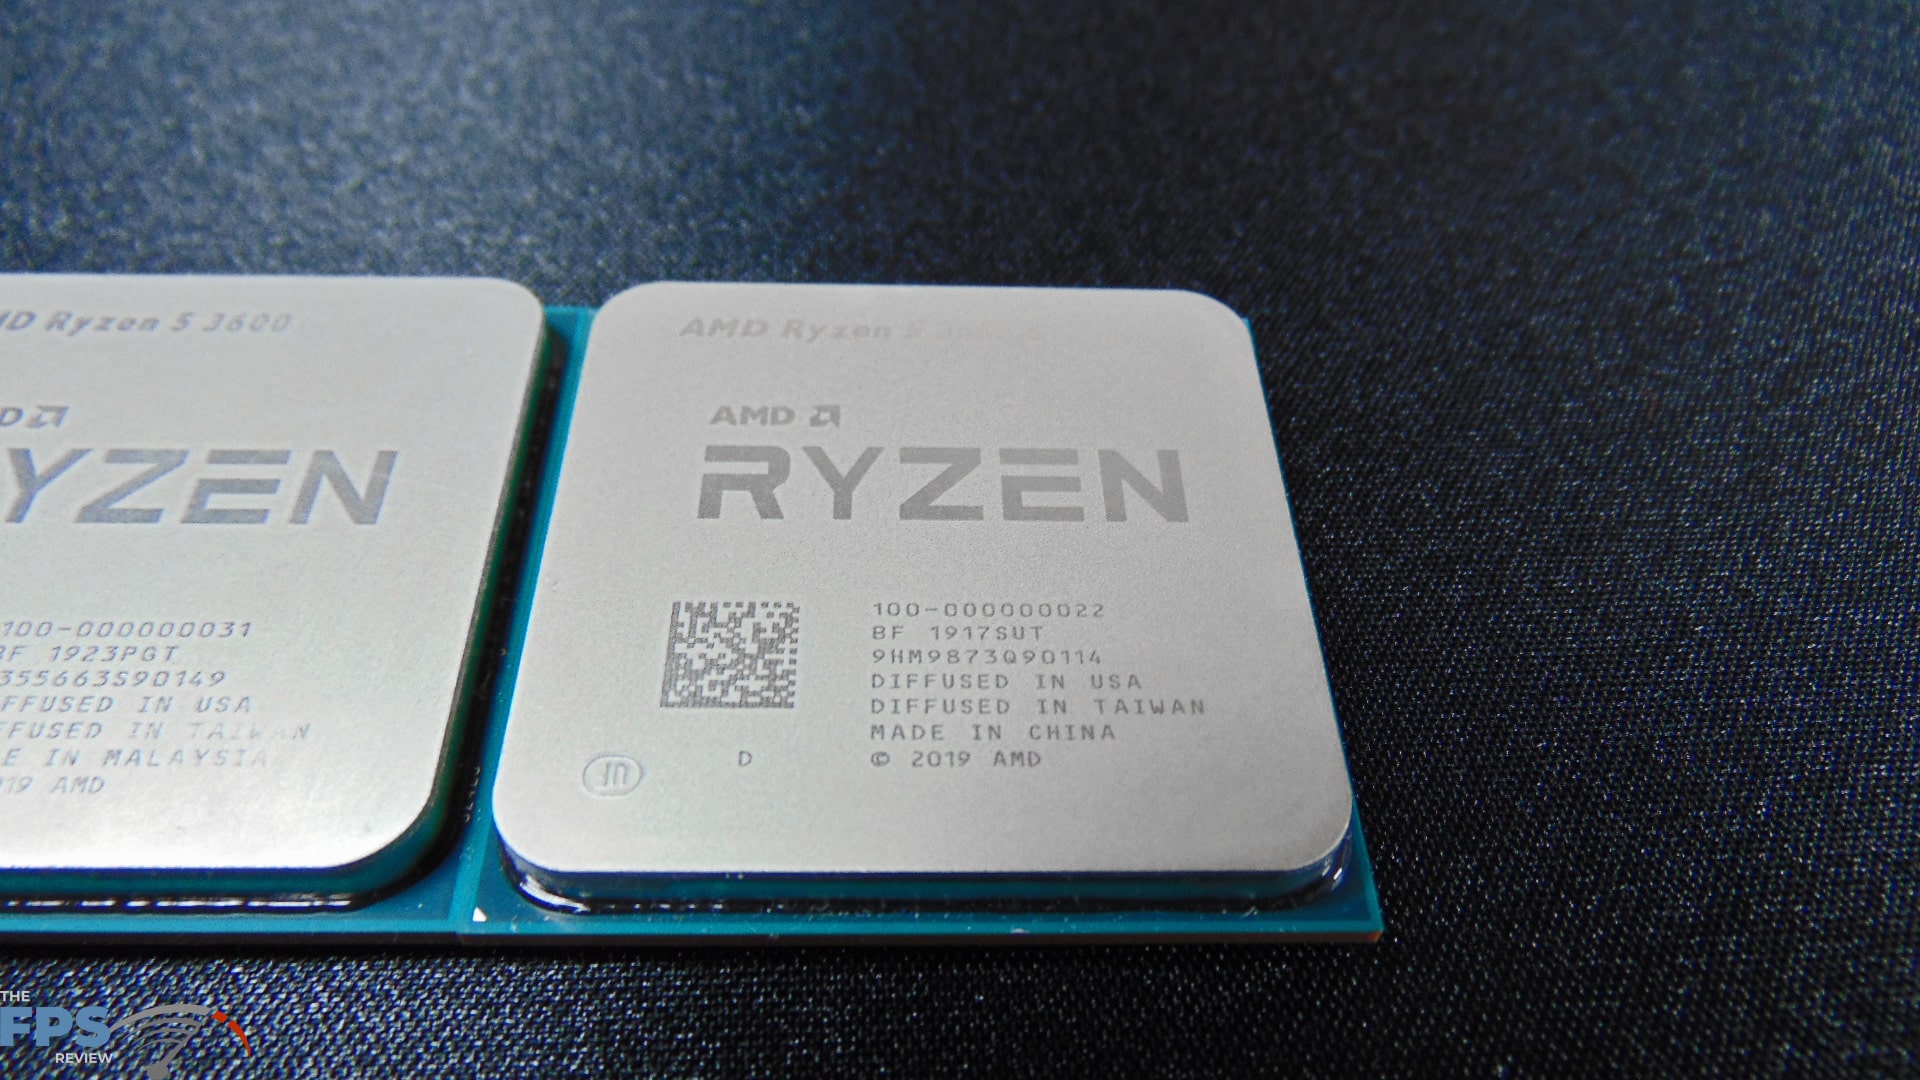 Ryzen 5 3600 vs 5 3600X Performance Comparison - The FPS Review